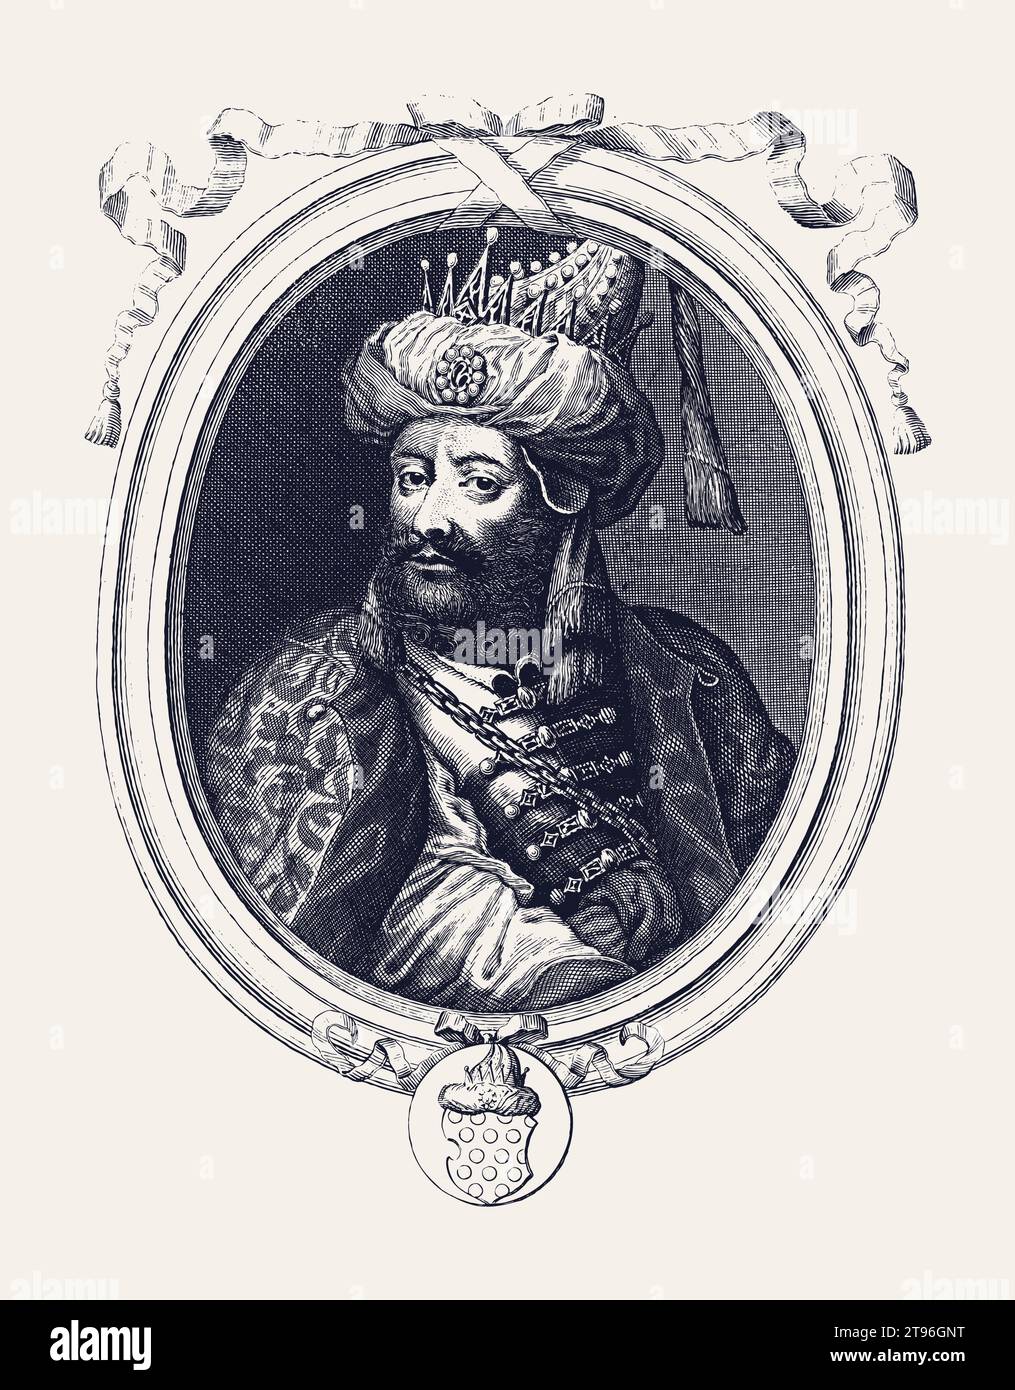 Illustrazione vettoriale in stile vintage di Aurangzeb Alamgir, il sultano dell'Impero Moghul. Illustrazione Vettoriale